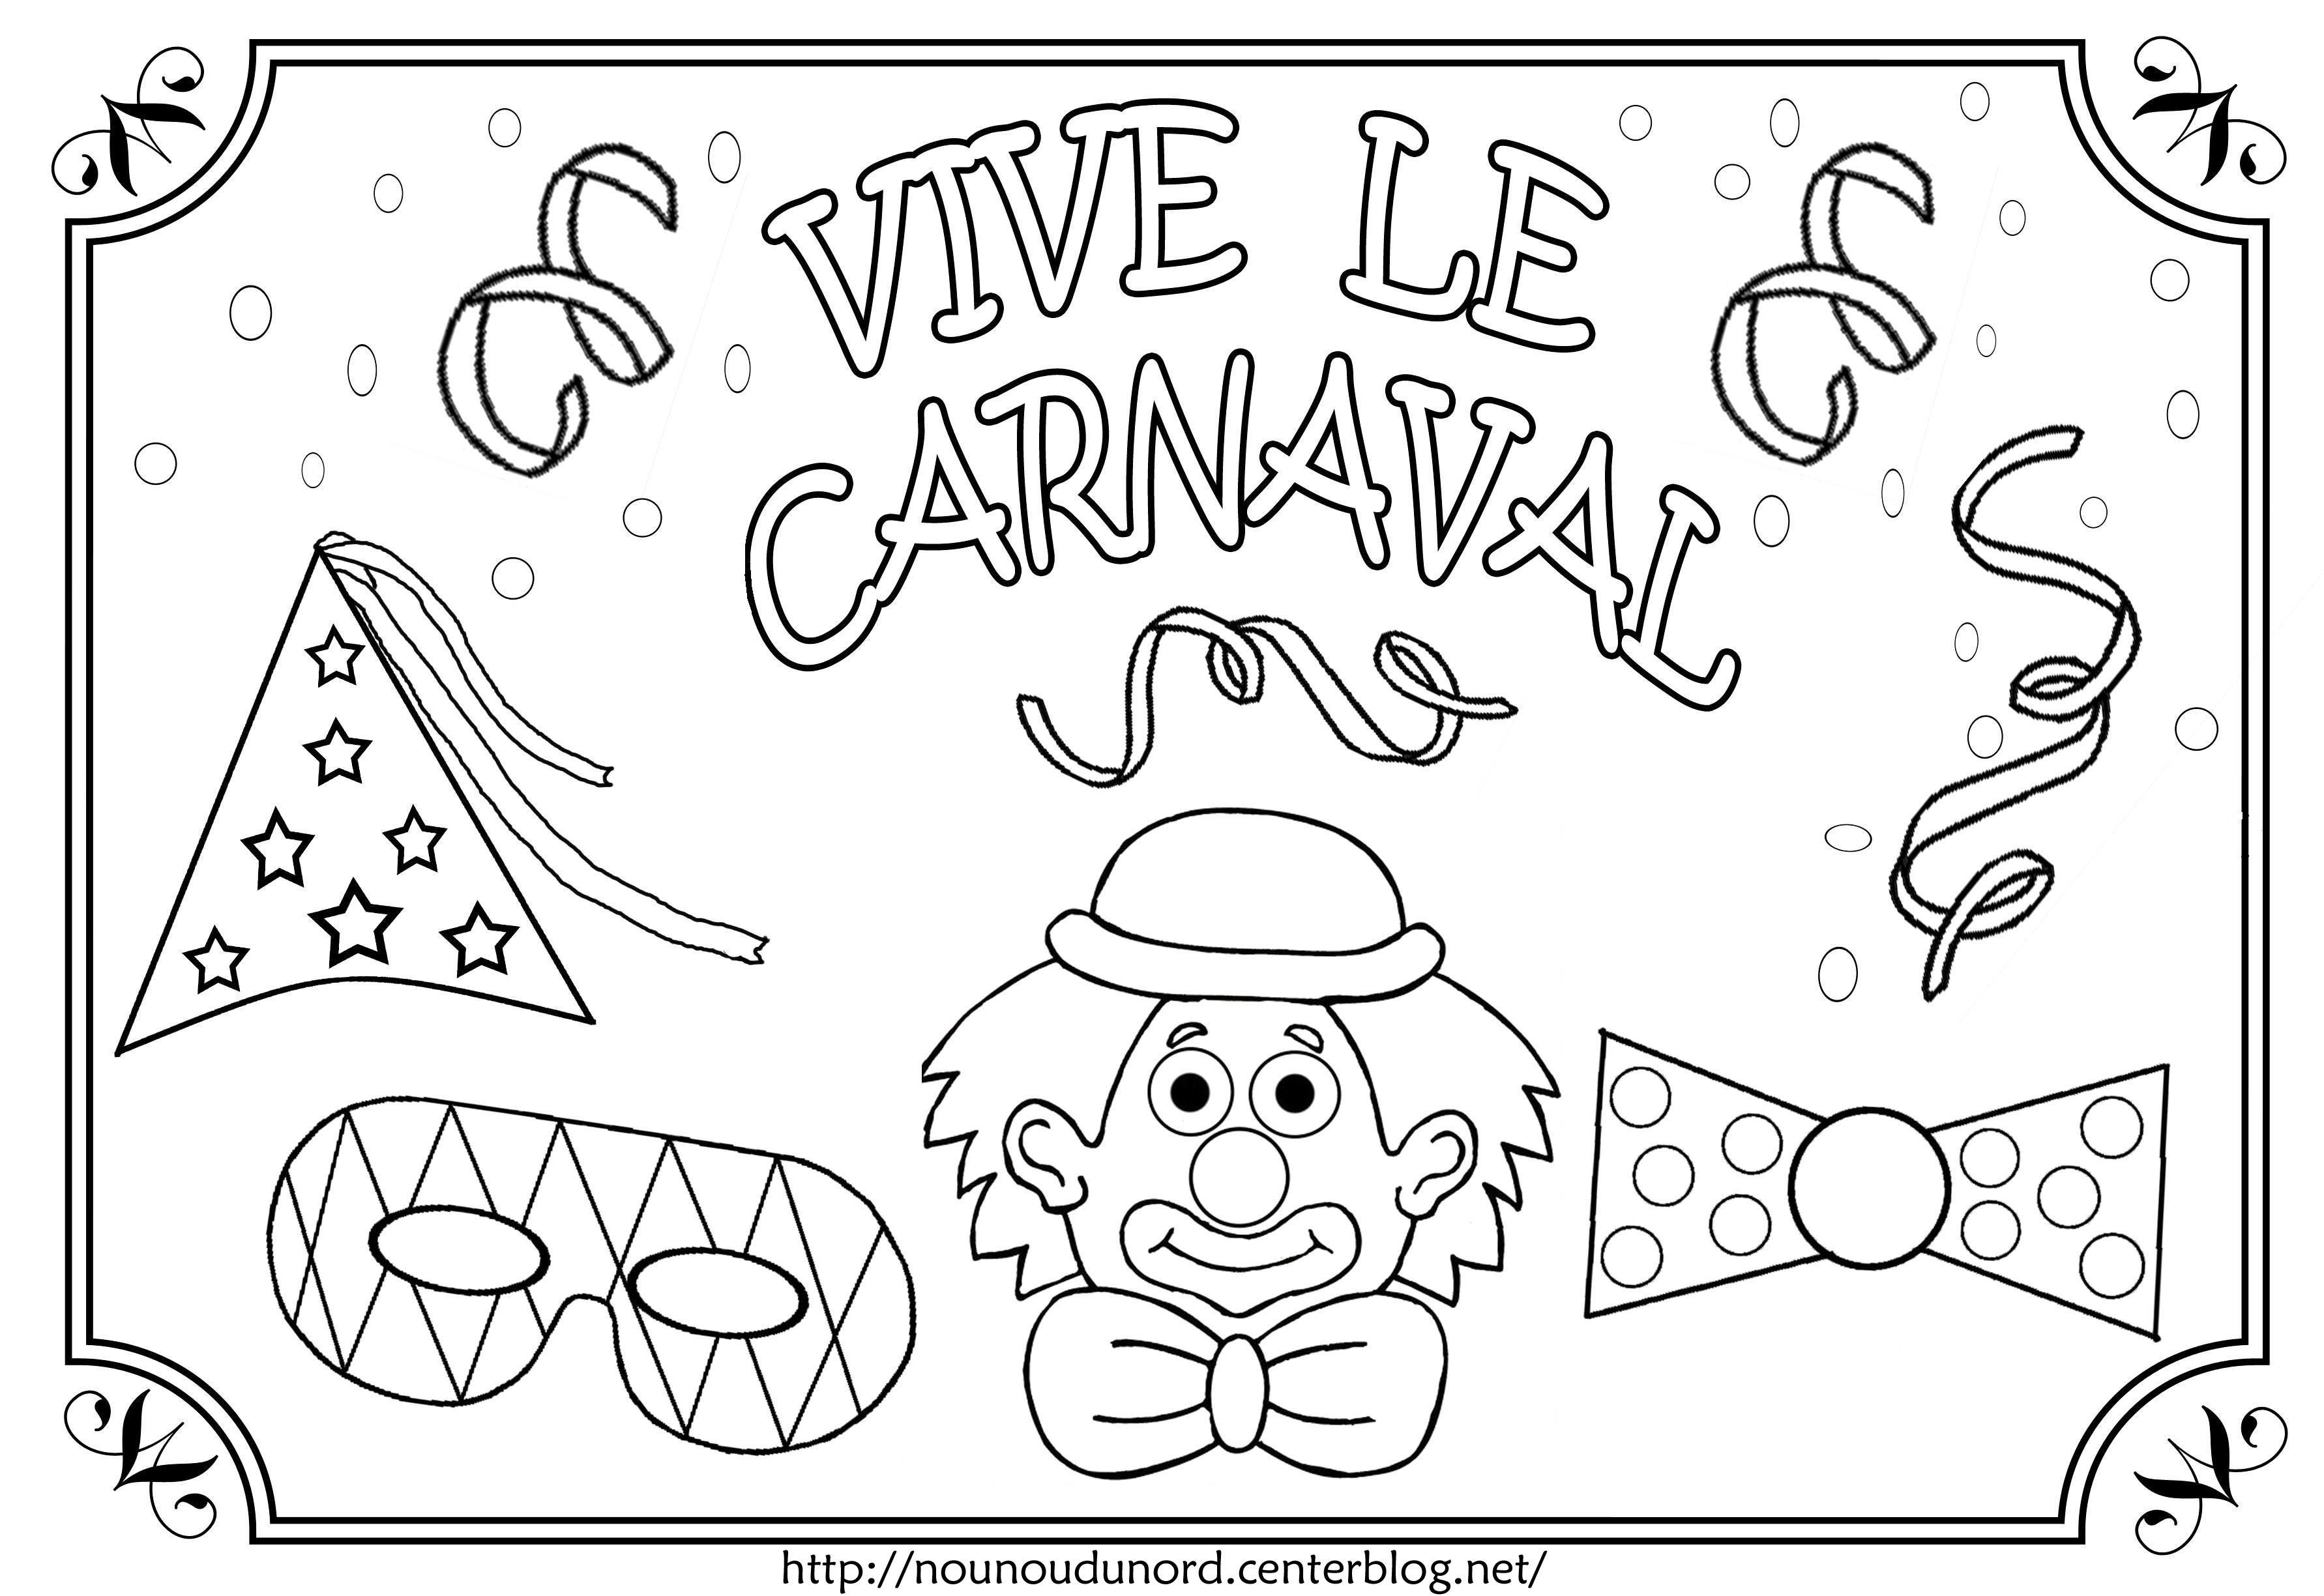 Coloriage vive le carnaval illustré par nounoudunord.